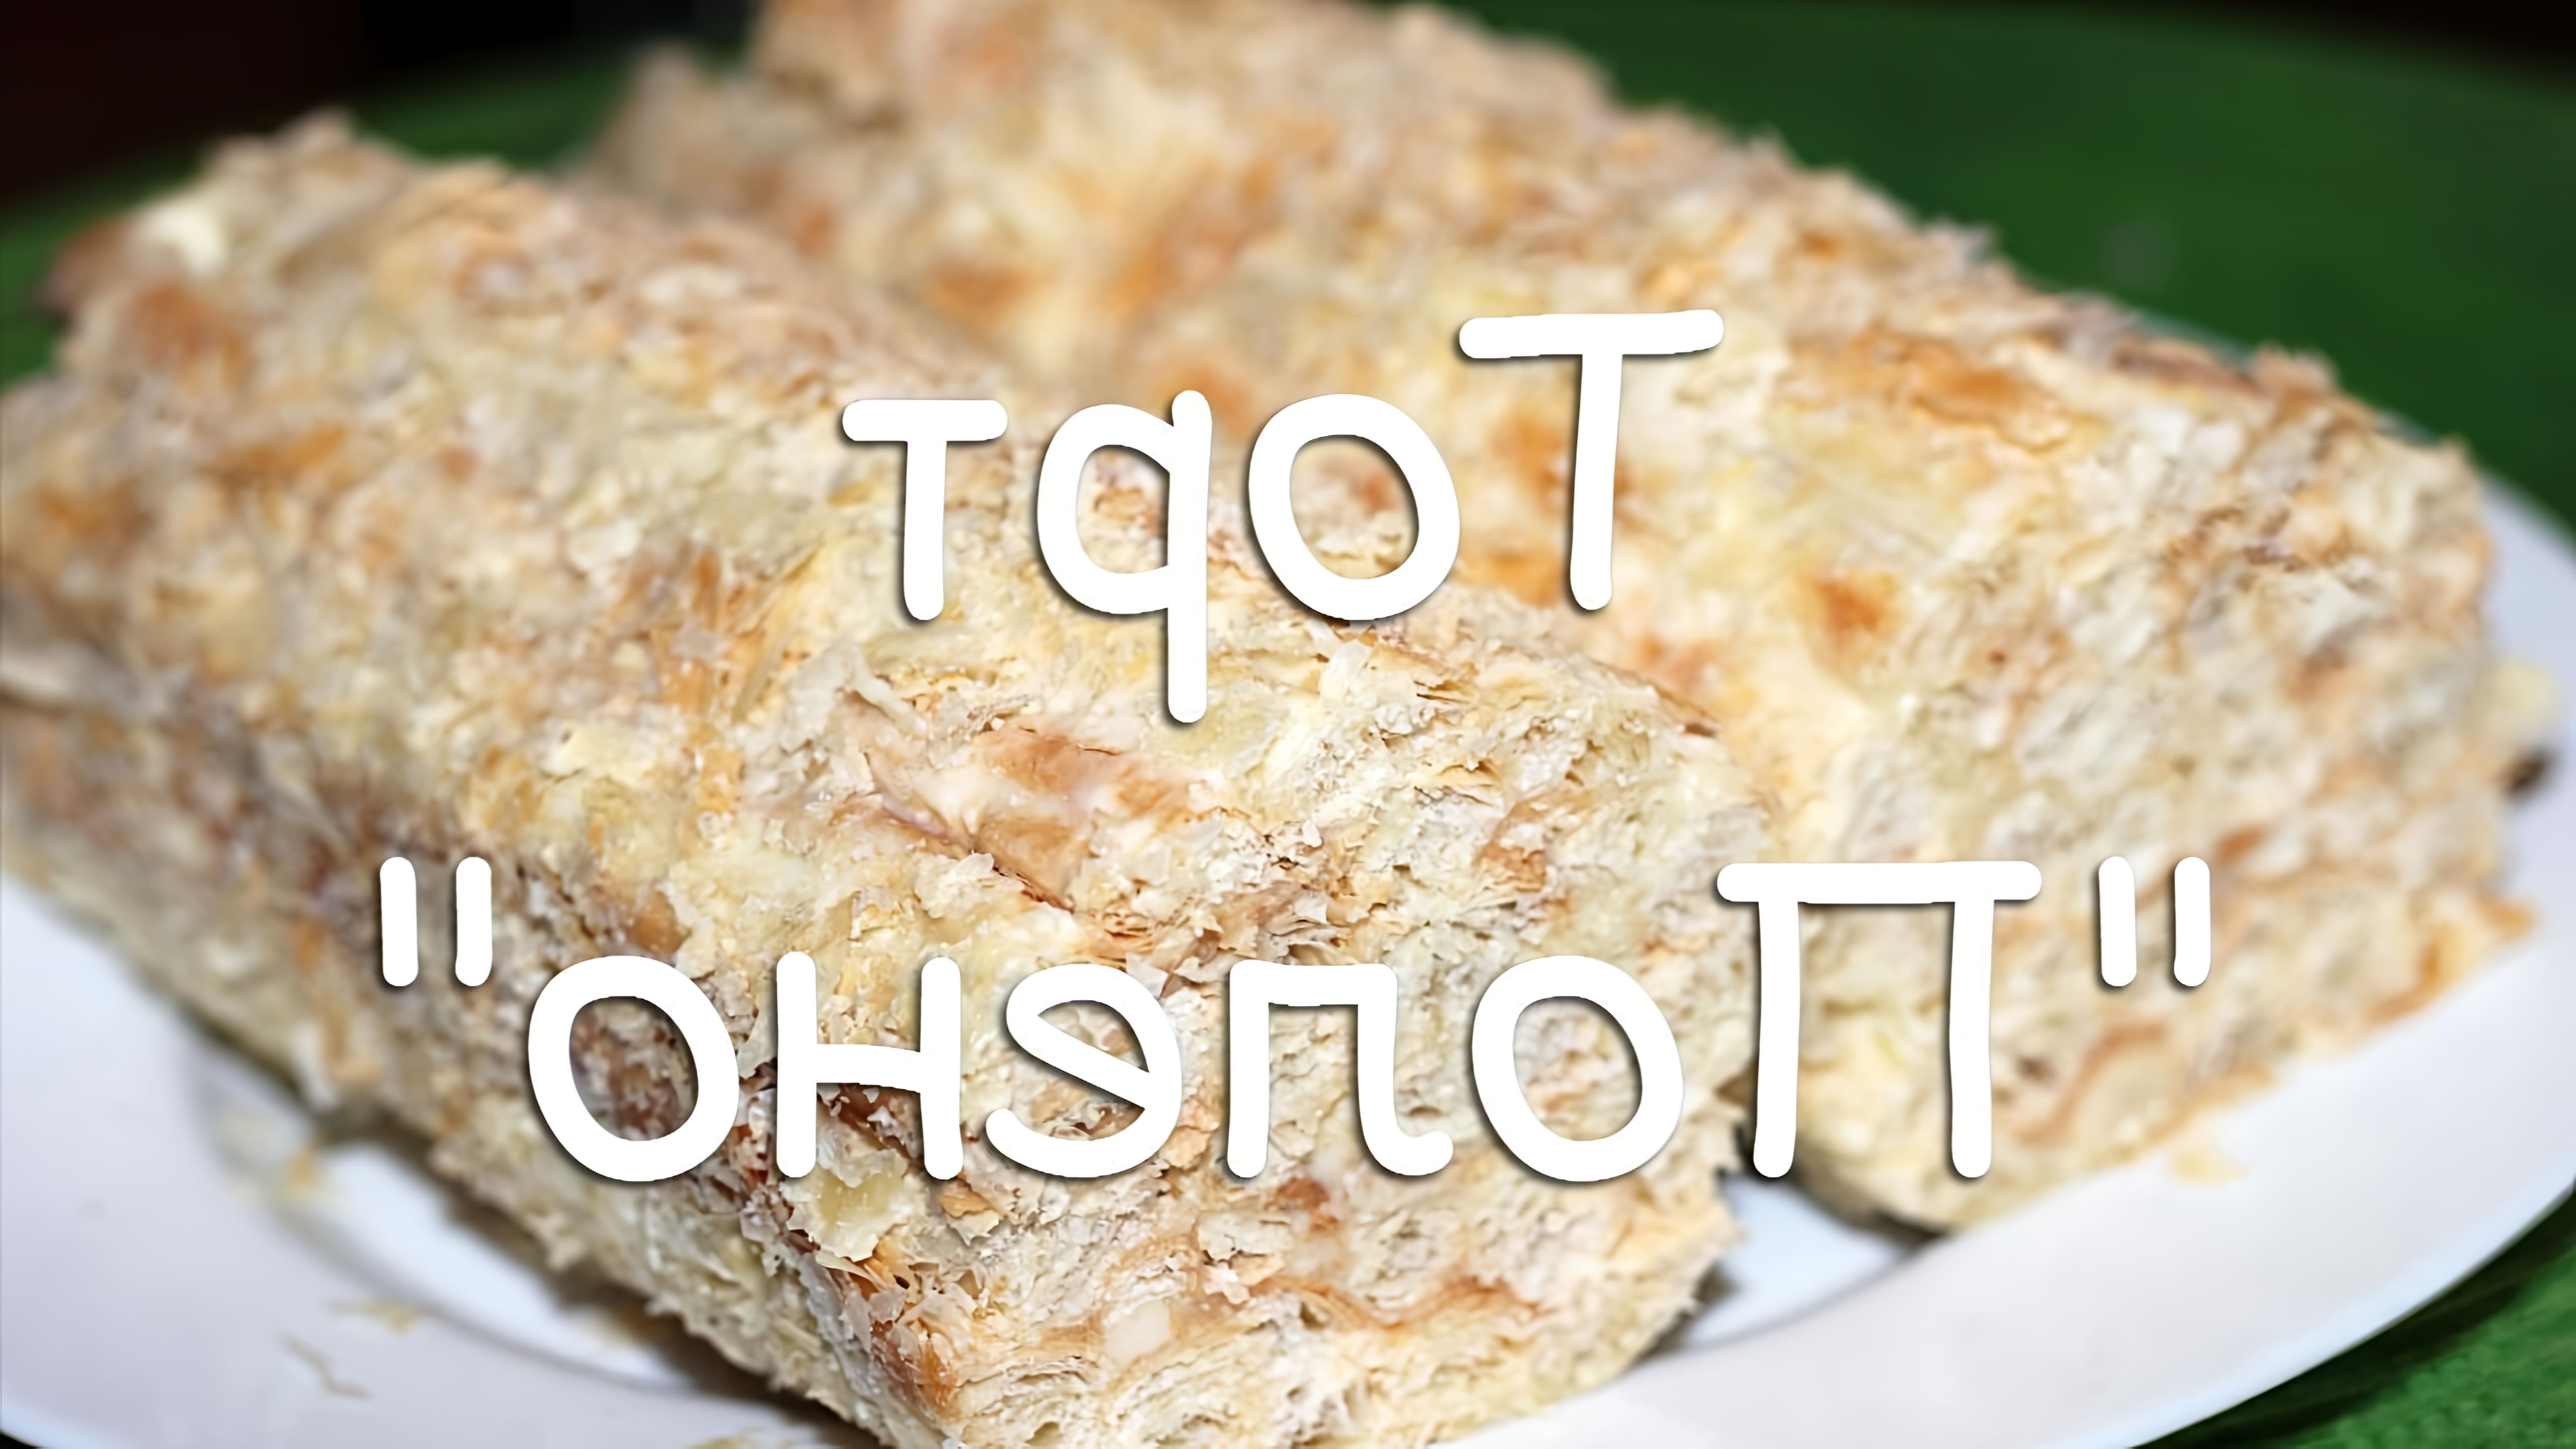 В этом видео-ролике будет показан простой и быстрый рецепт домашнего торта "Полено" из слоеного теста со сгущенкой